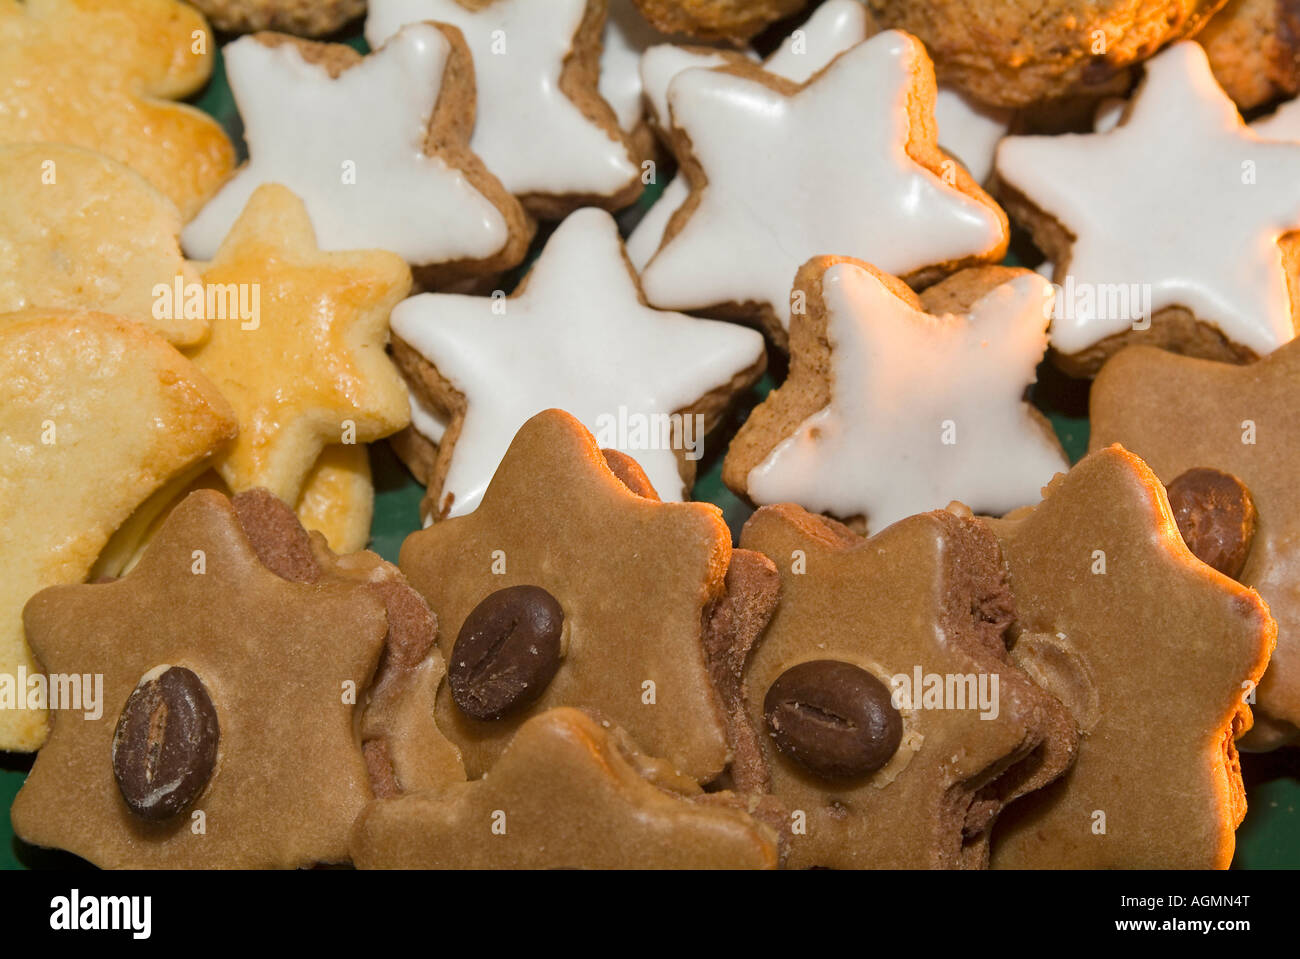 Weihnachten Weihnachtsplätzchen Gebäck Zimtstern Christmas cookies bisquits cinnamon stars Stock Photo